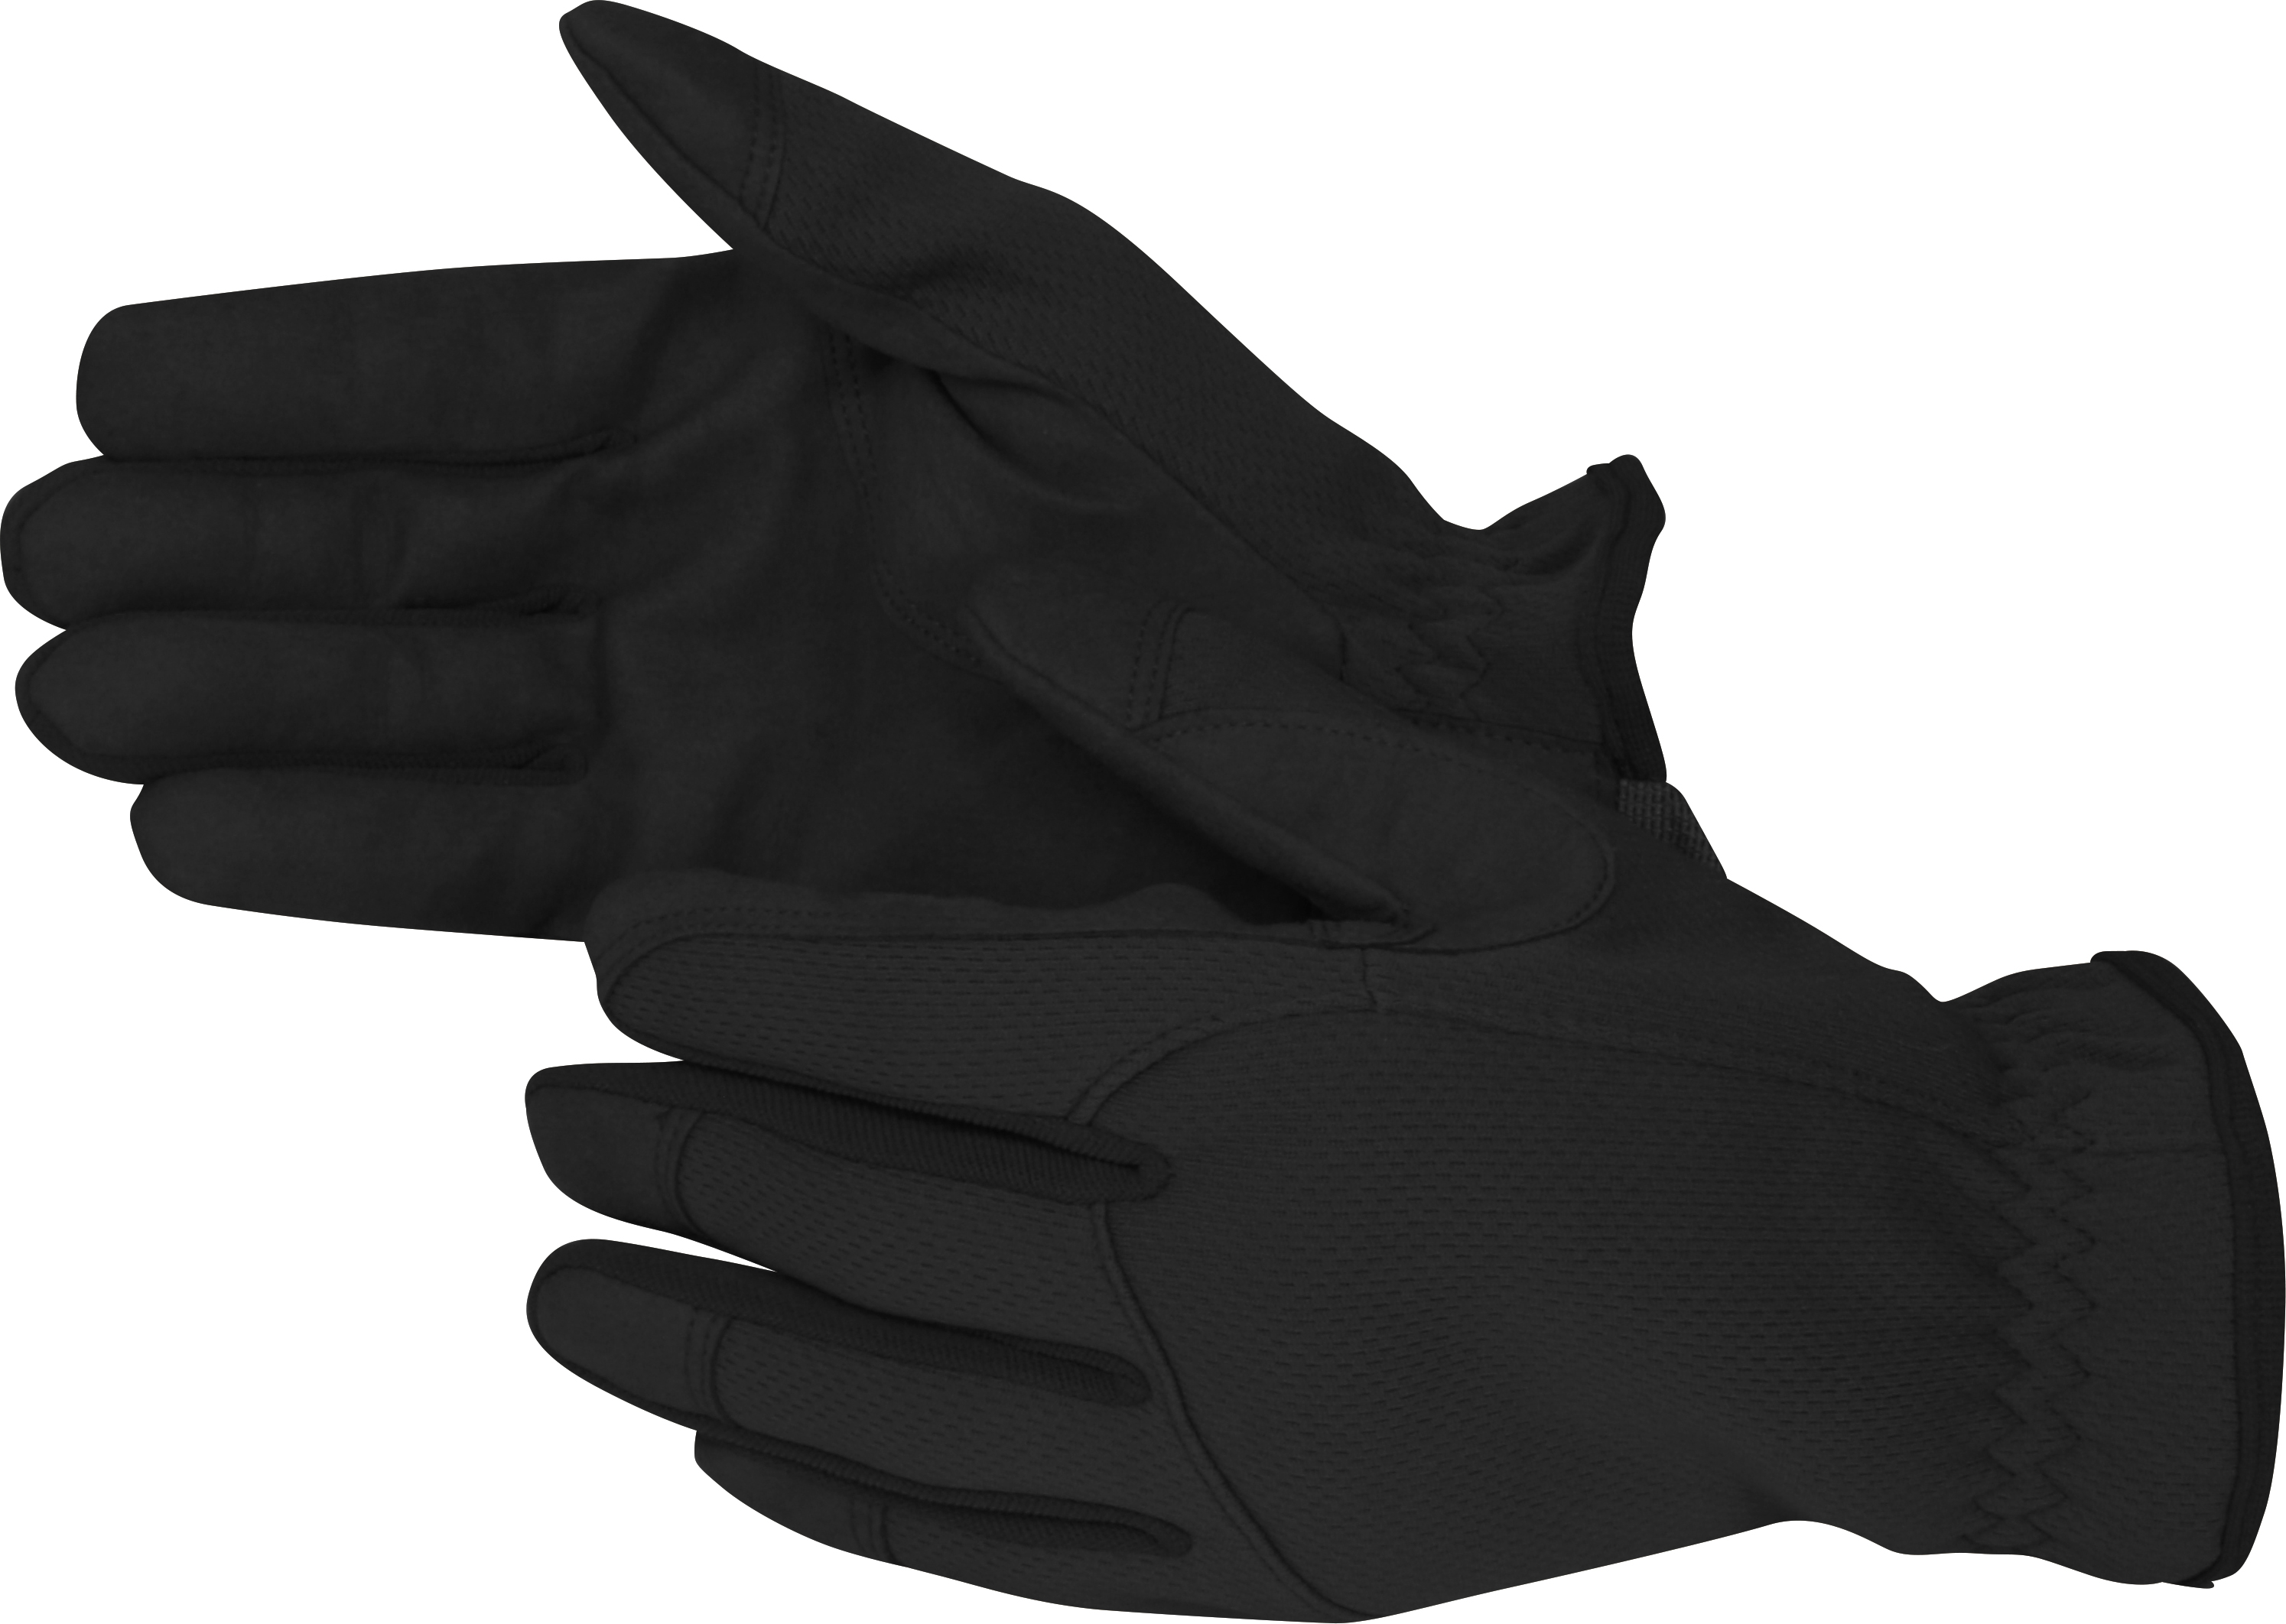 Viper Tactical Patrol Gloves - Black